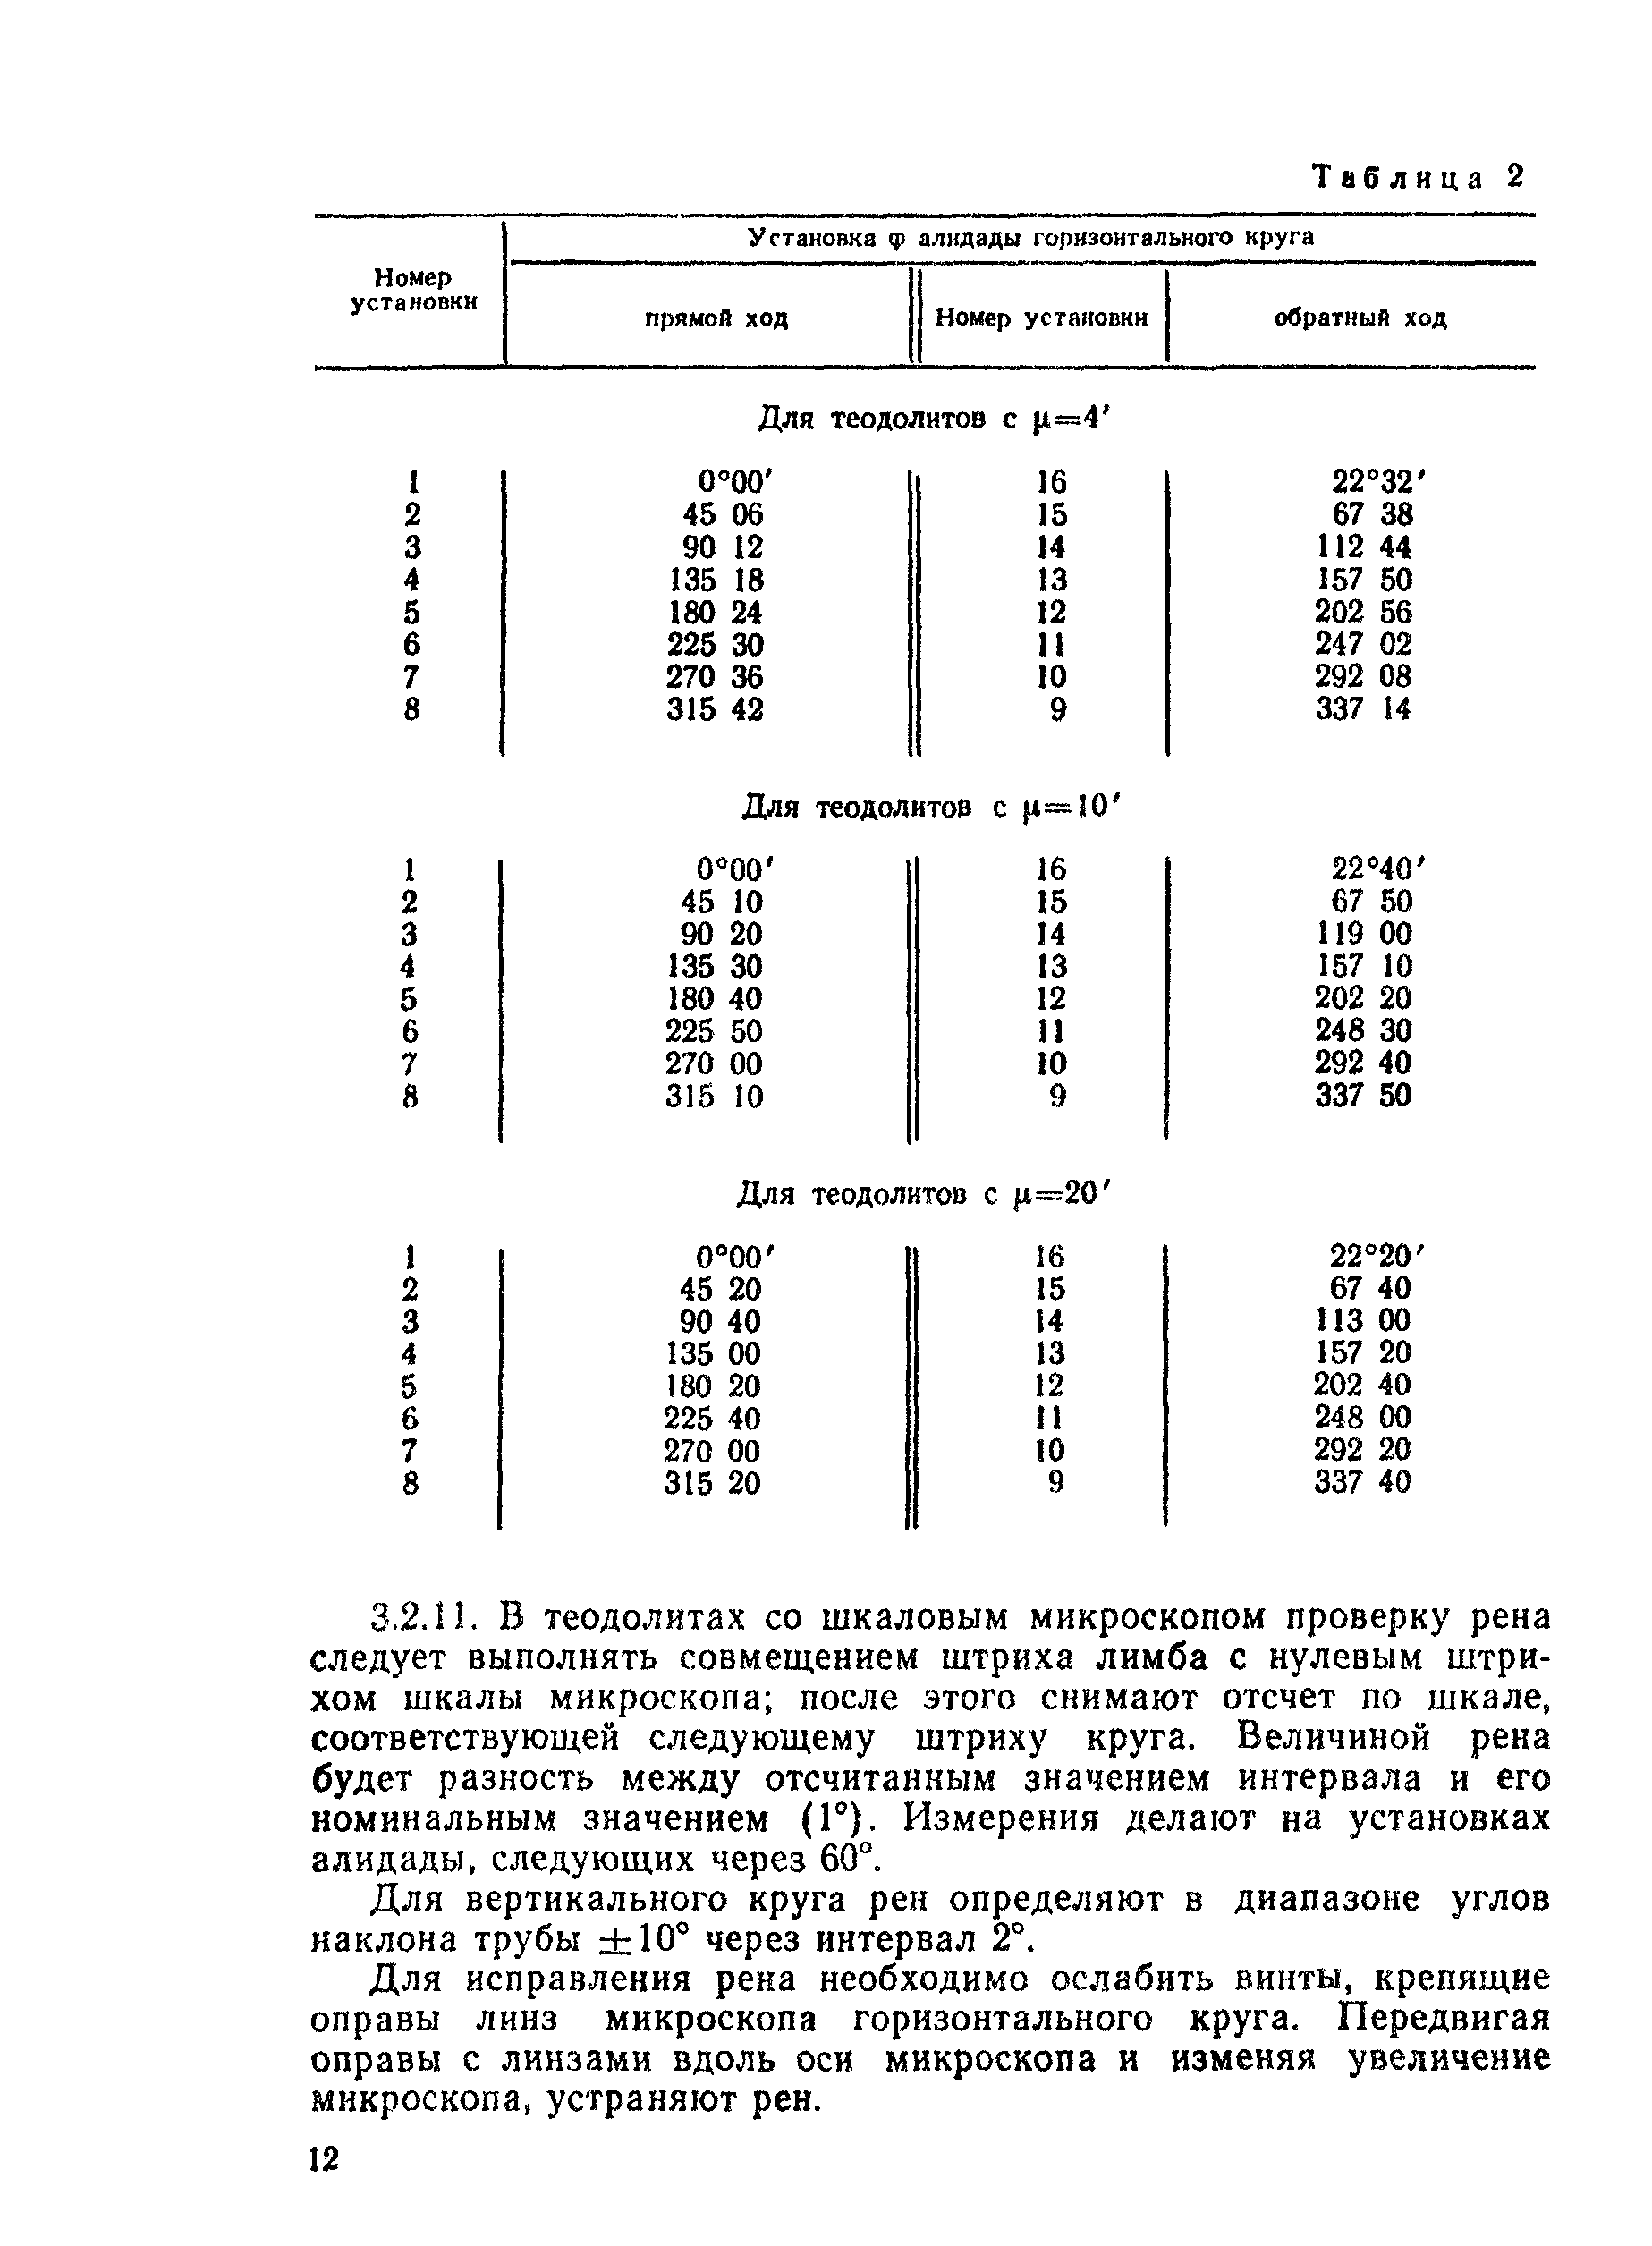 ГКИНП 17-195-85